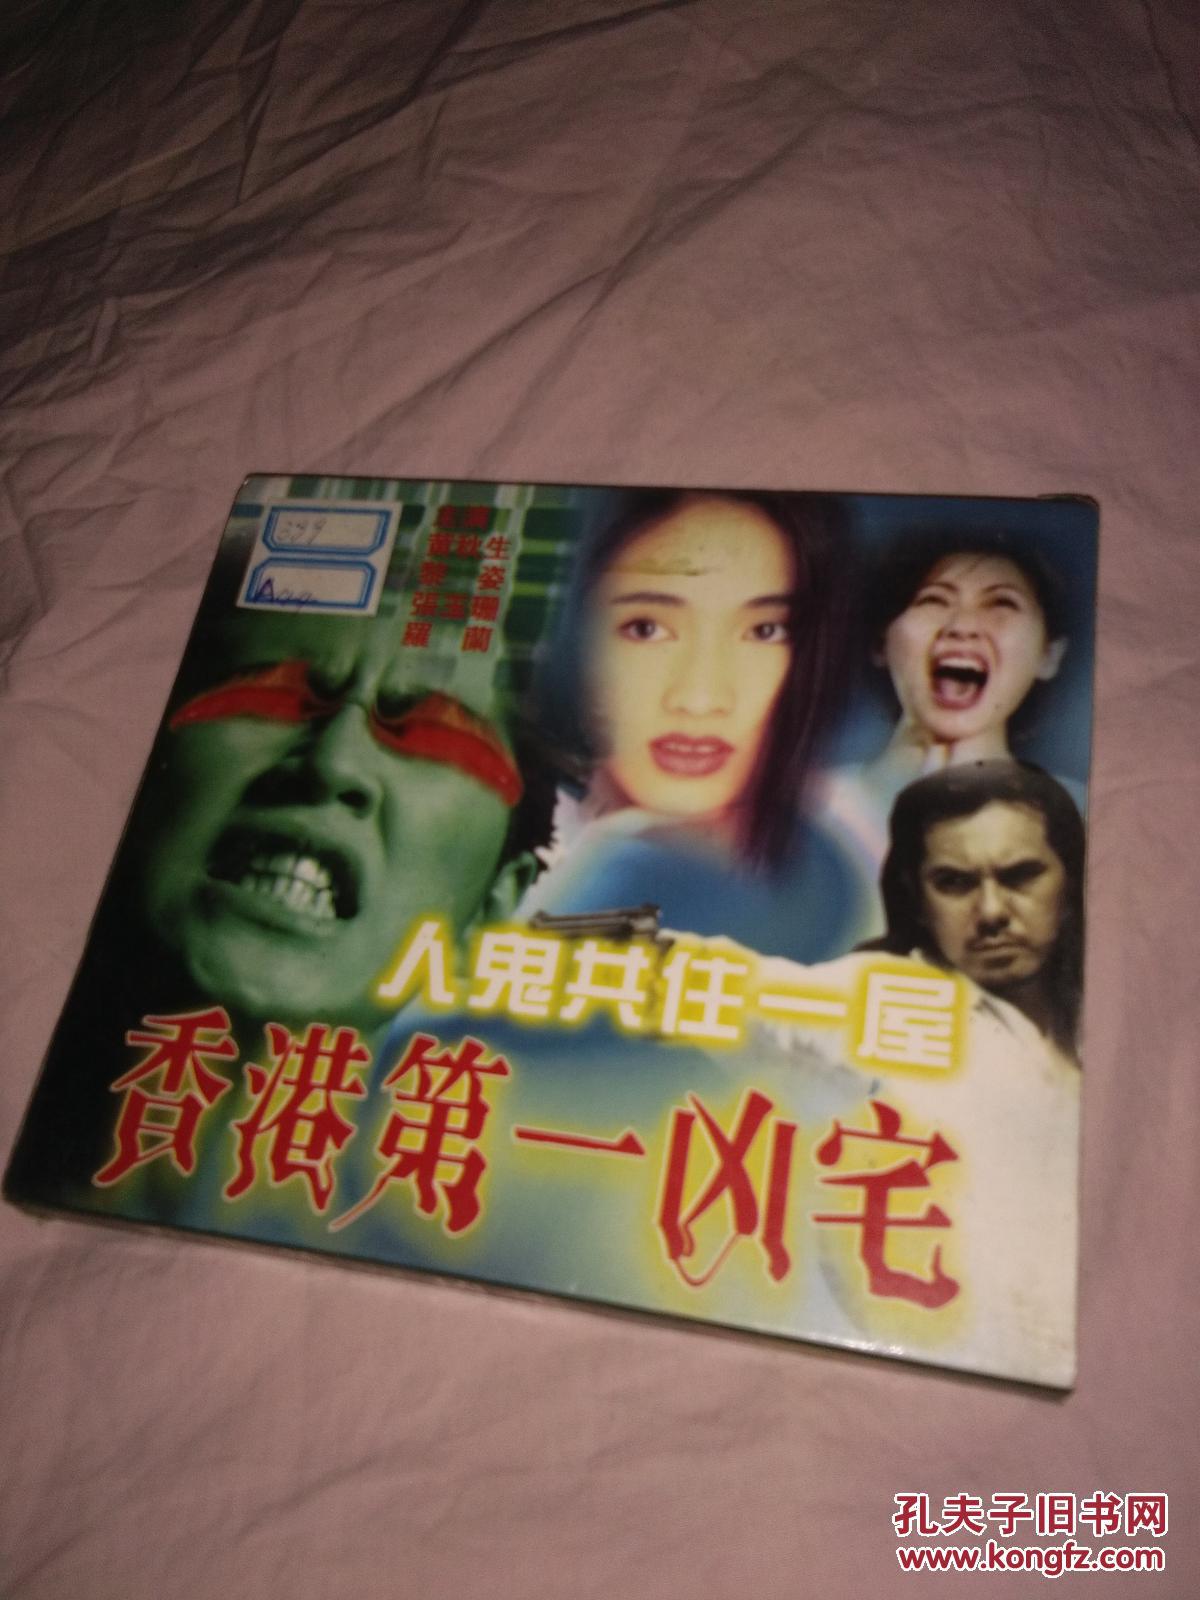 【图】VCD碟,香港第一凶宅,老音像店的货_不